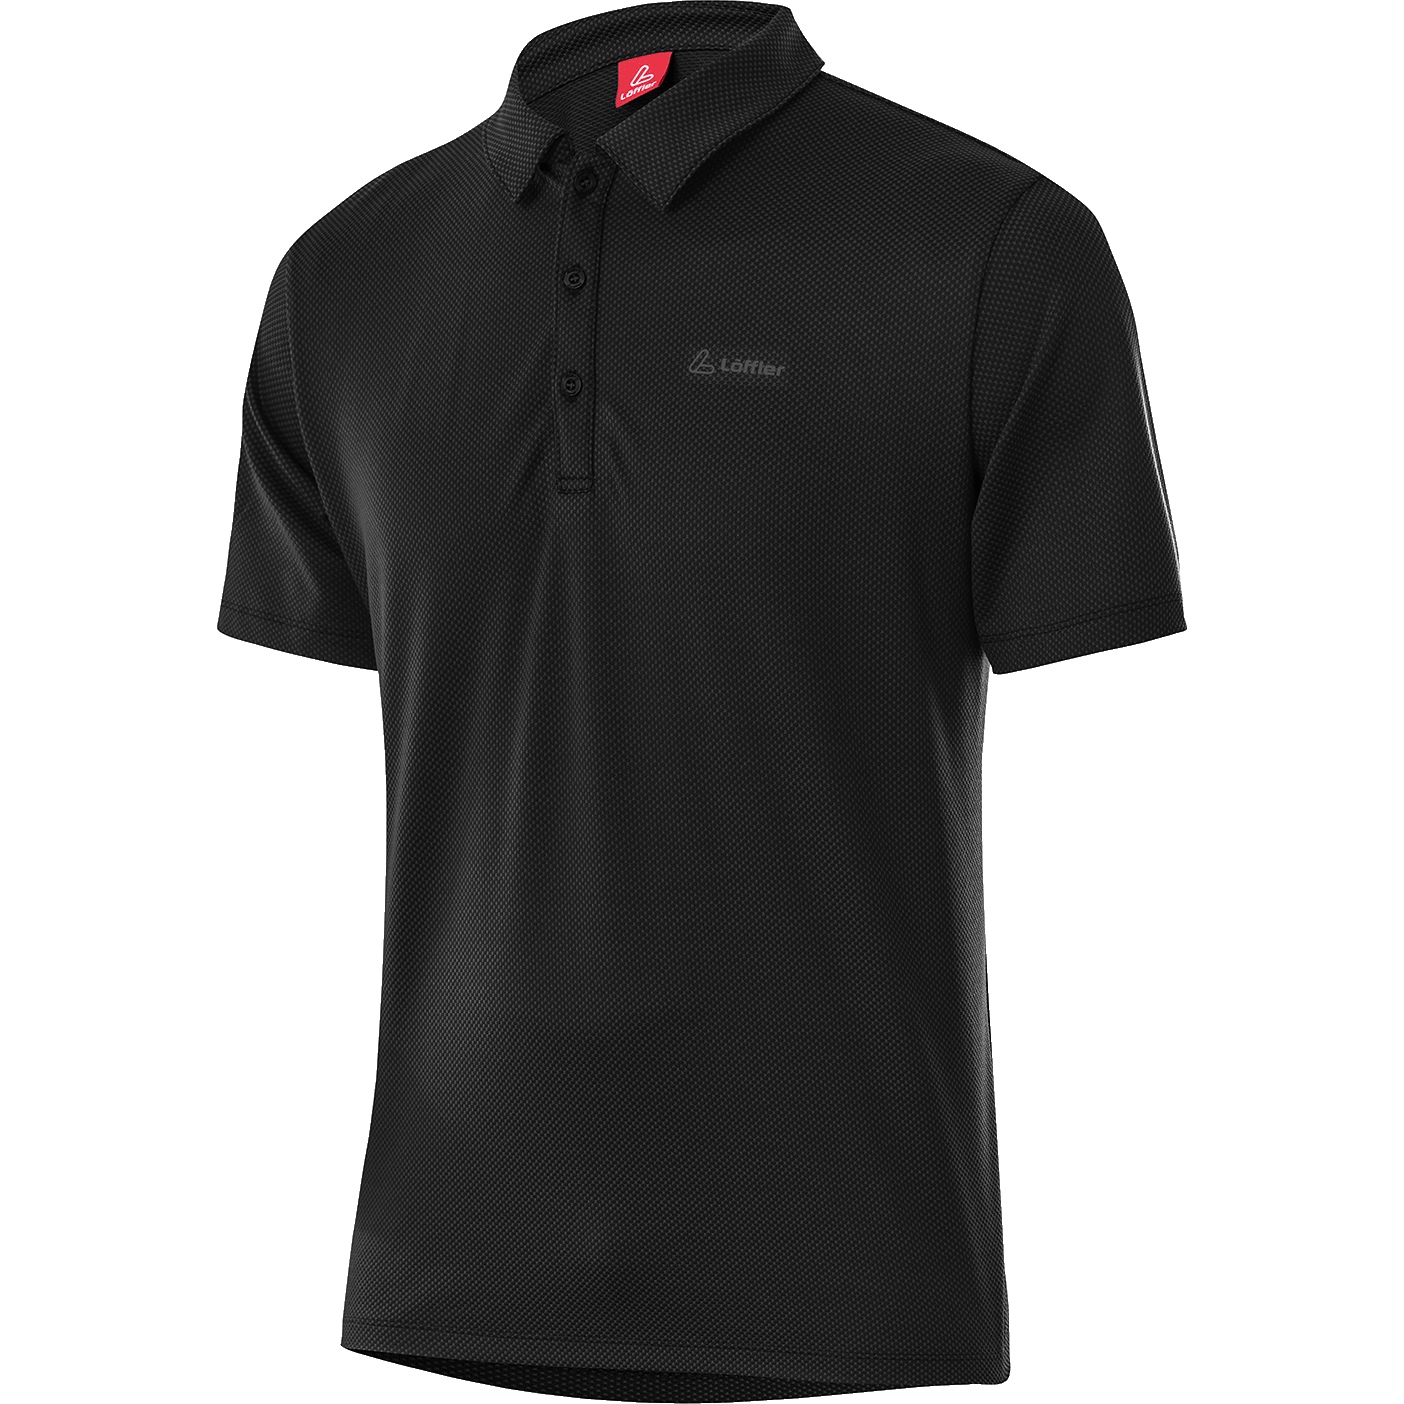 Productfoto van Löffler Tencel™ Comfort Poloshirt Heren - zwart 990